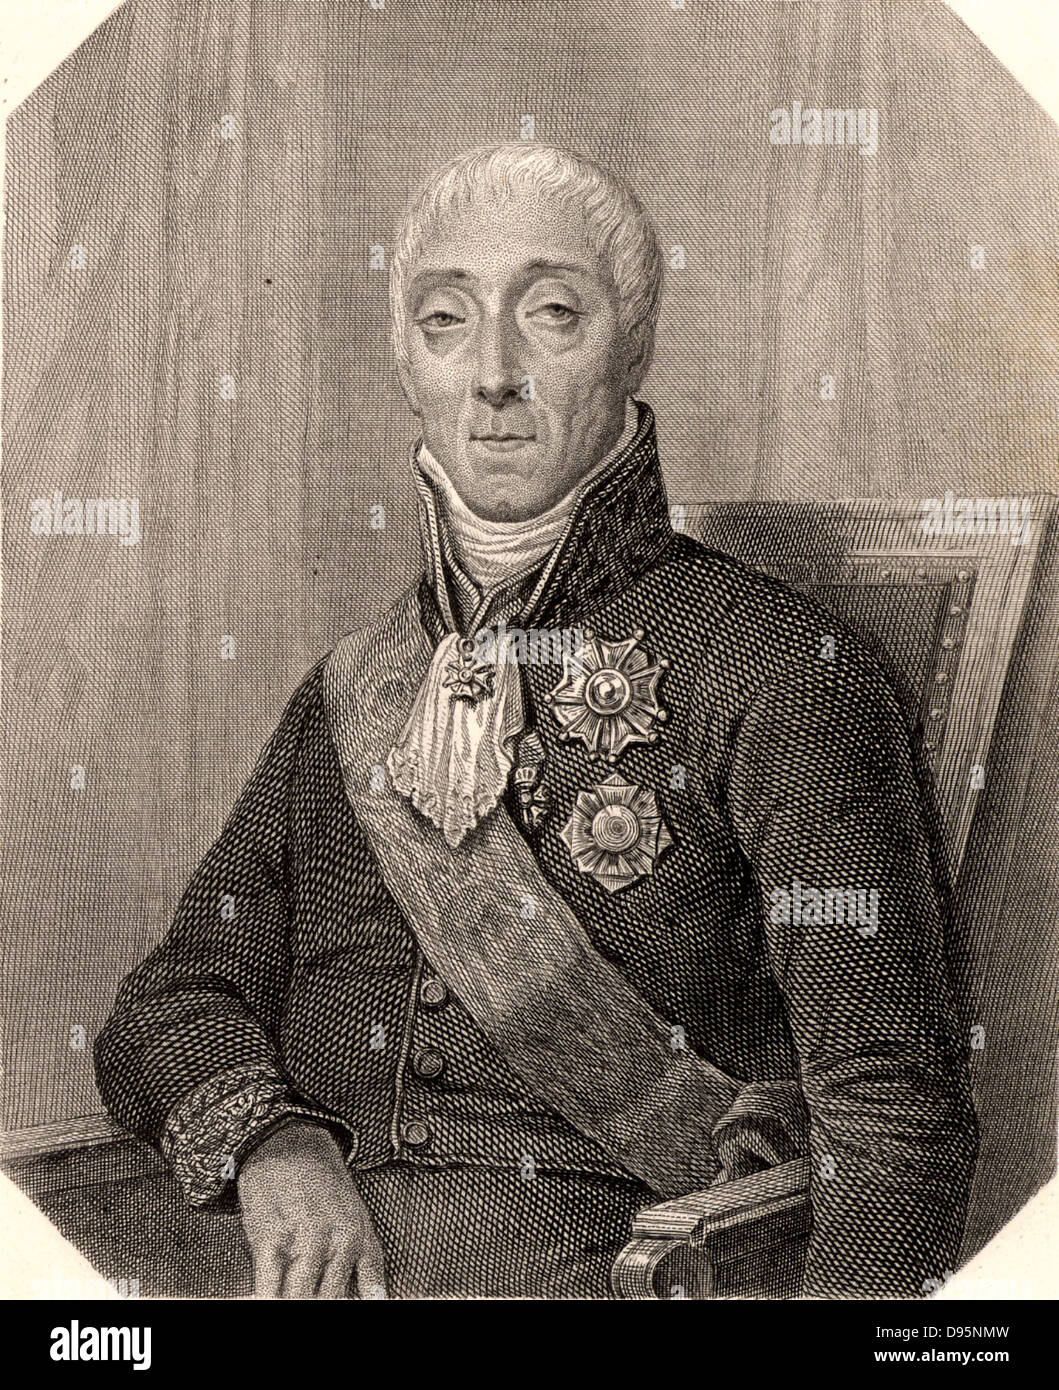 Joseph Fouche, duque de Otranto (1763-1829) estadista francés y revolucionario. Votó a favor de la ejecución de Luis XVI. 1799-1815 Ministro de la policía. Grabado. Foto de stock